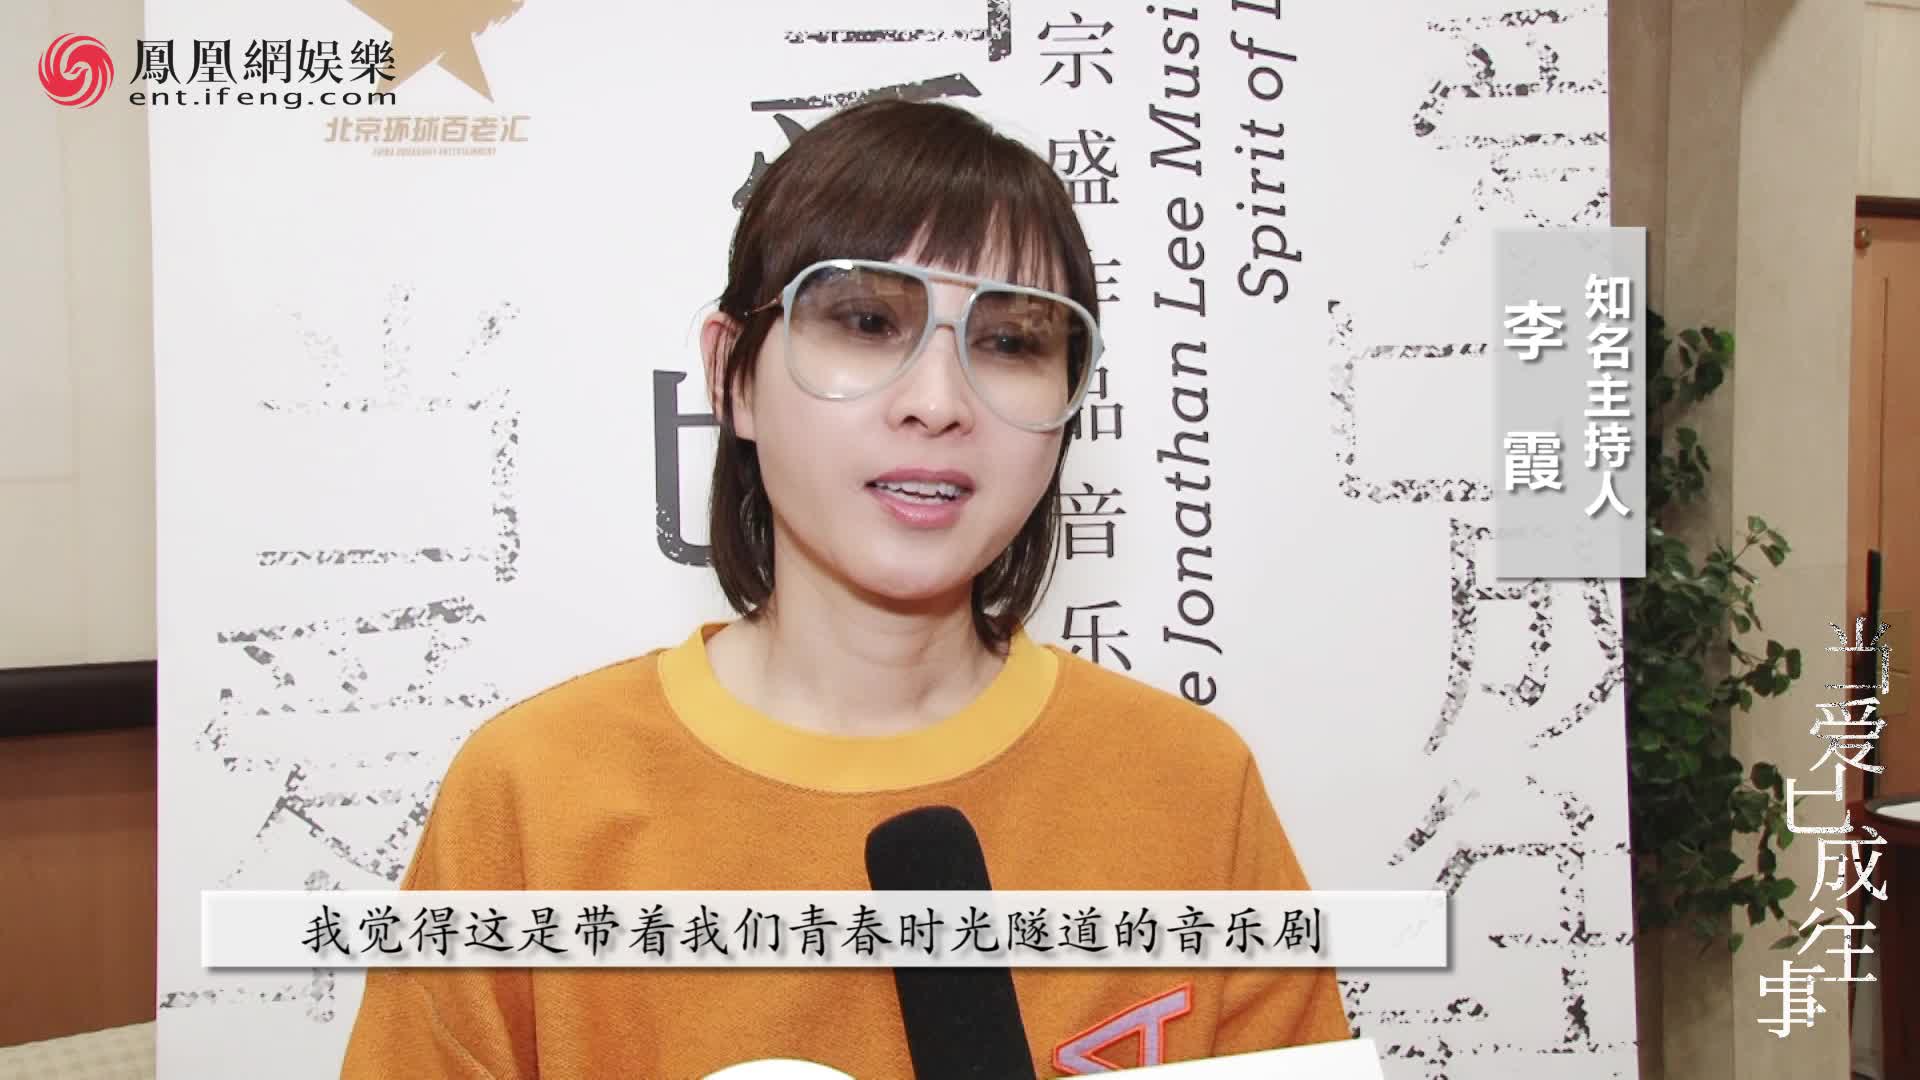 李霞被音乐剧《当爱已成往事》感动 呼吁更多年轻人来培养中国音乐剧市场